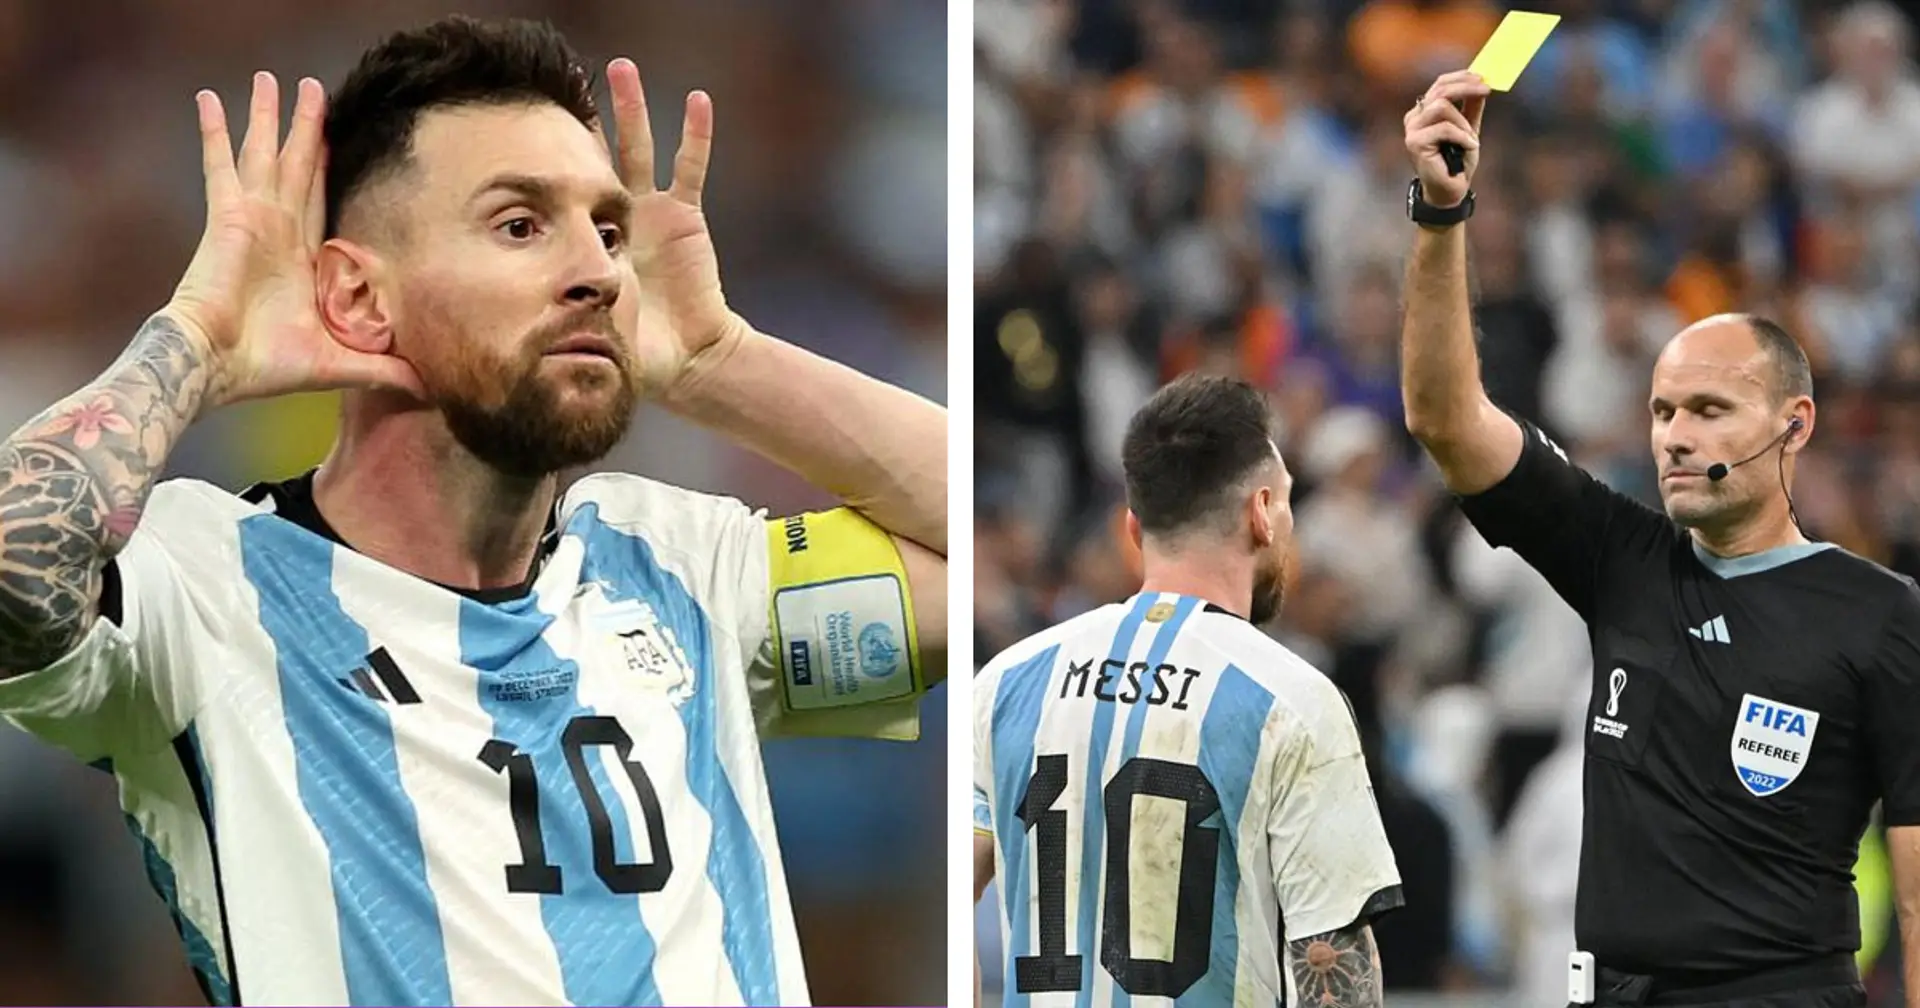 Si Messi est averti en demi-finale de la Coupe du monde, pourra-t-il jouer en finale ou pour la 3e place ? Réponse